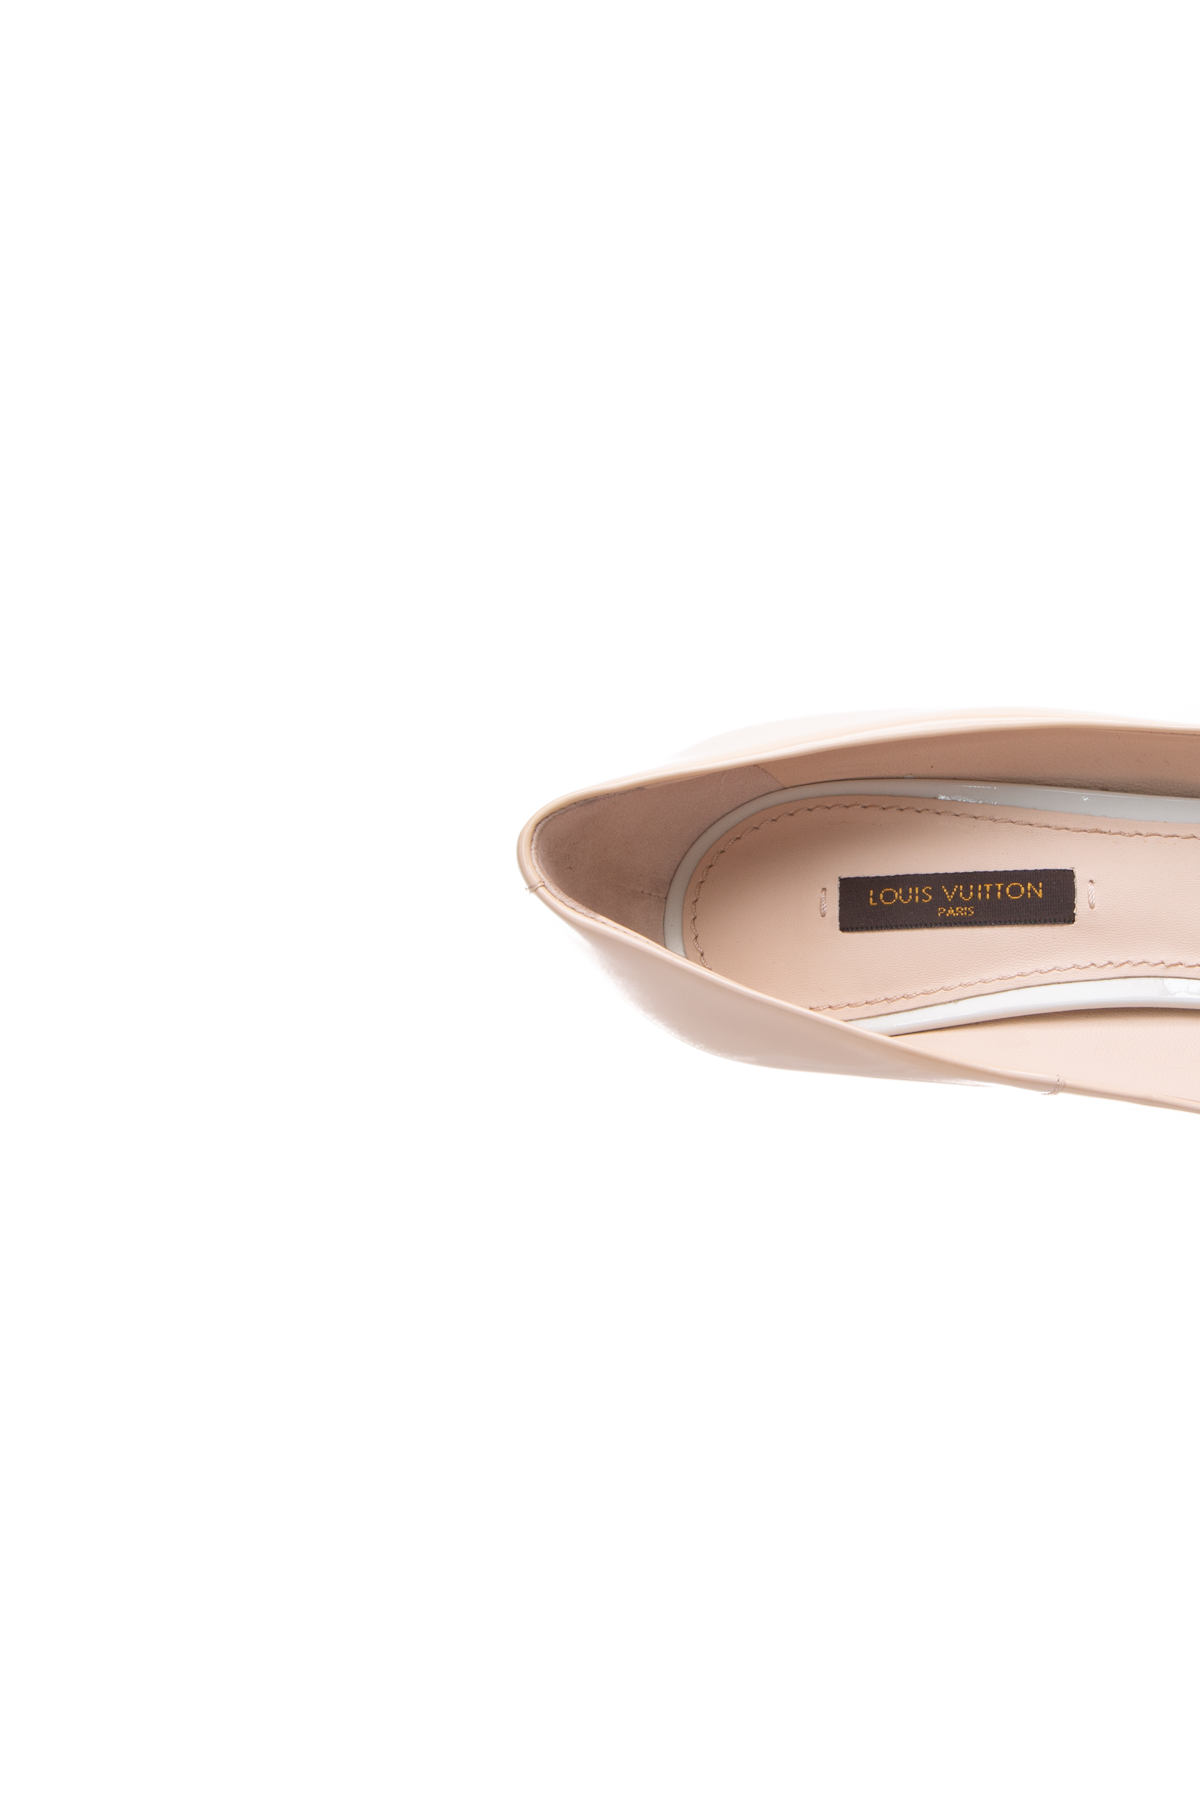 Louis Vuitton Beige Patent Leather Eyeline Pumps Size 8.5/39